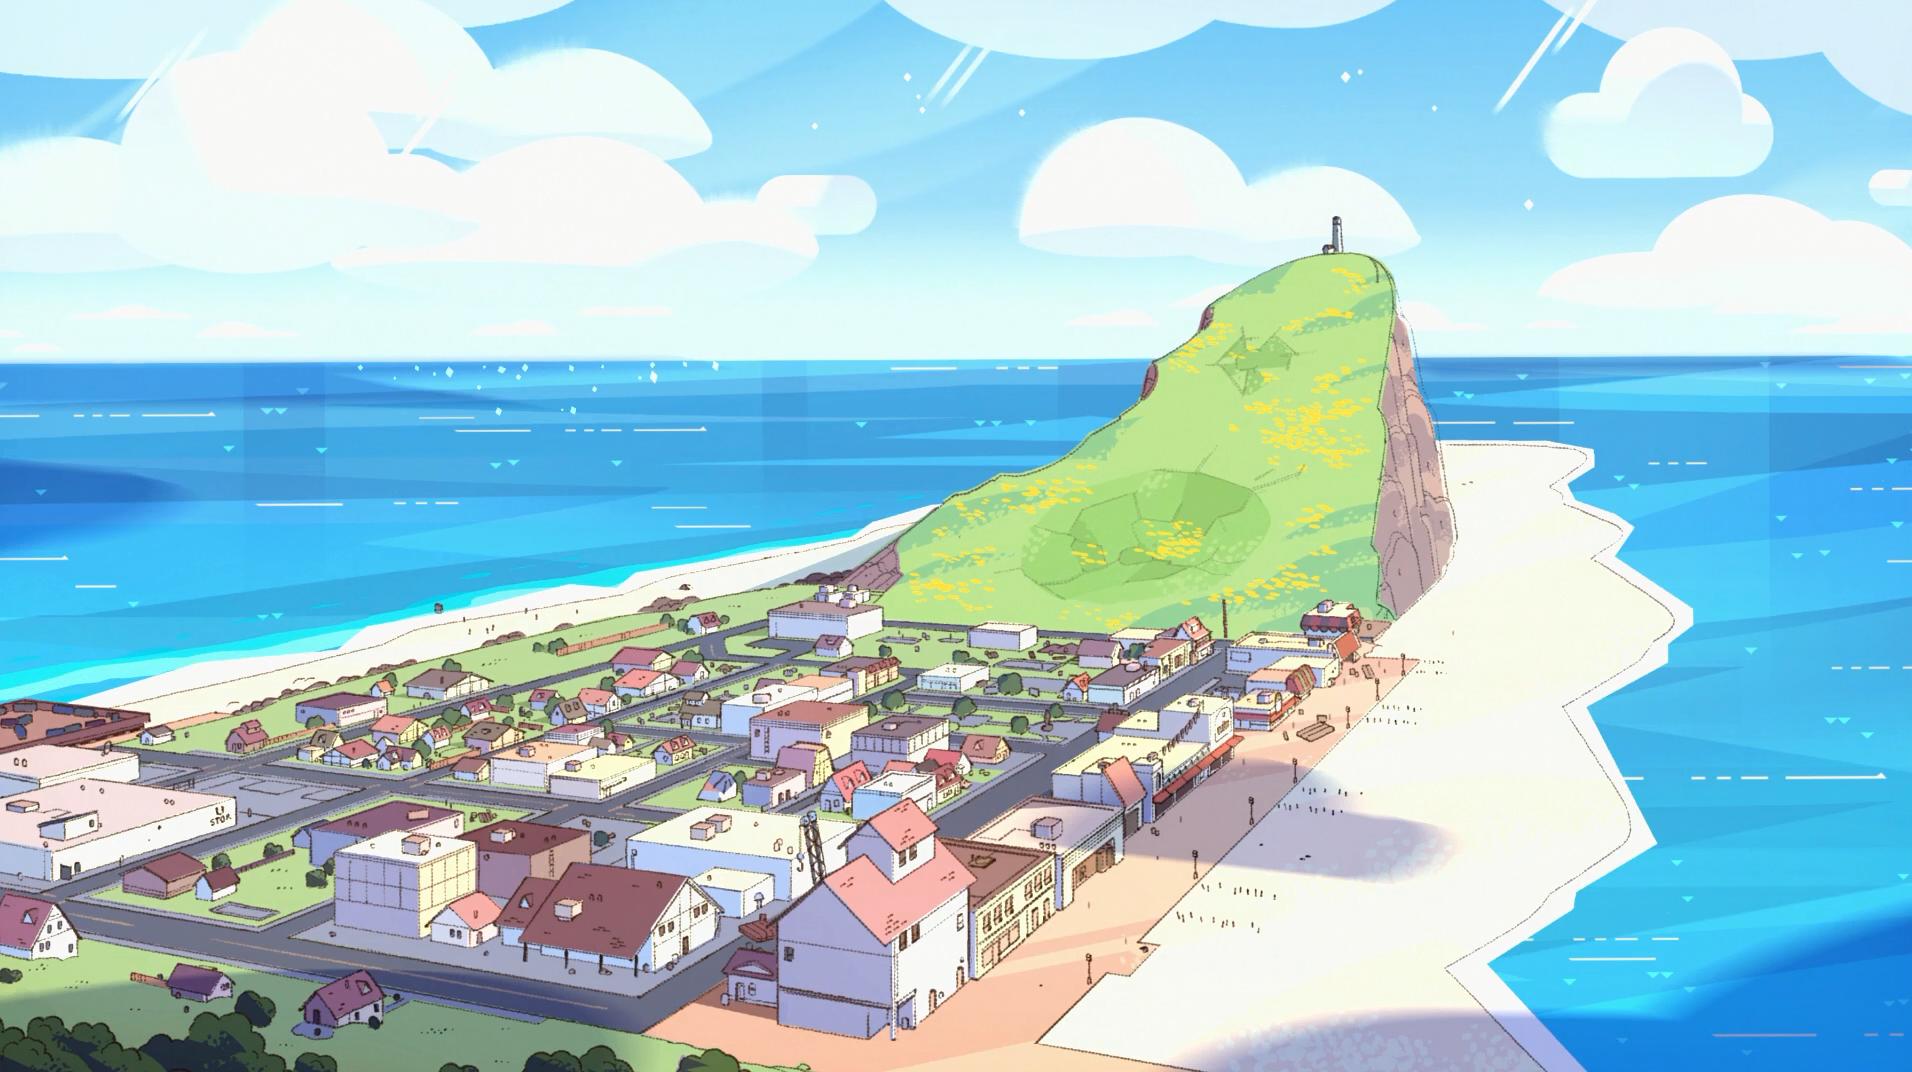 Última a Sair de Beach City, Steven Universo Wiki